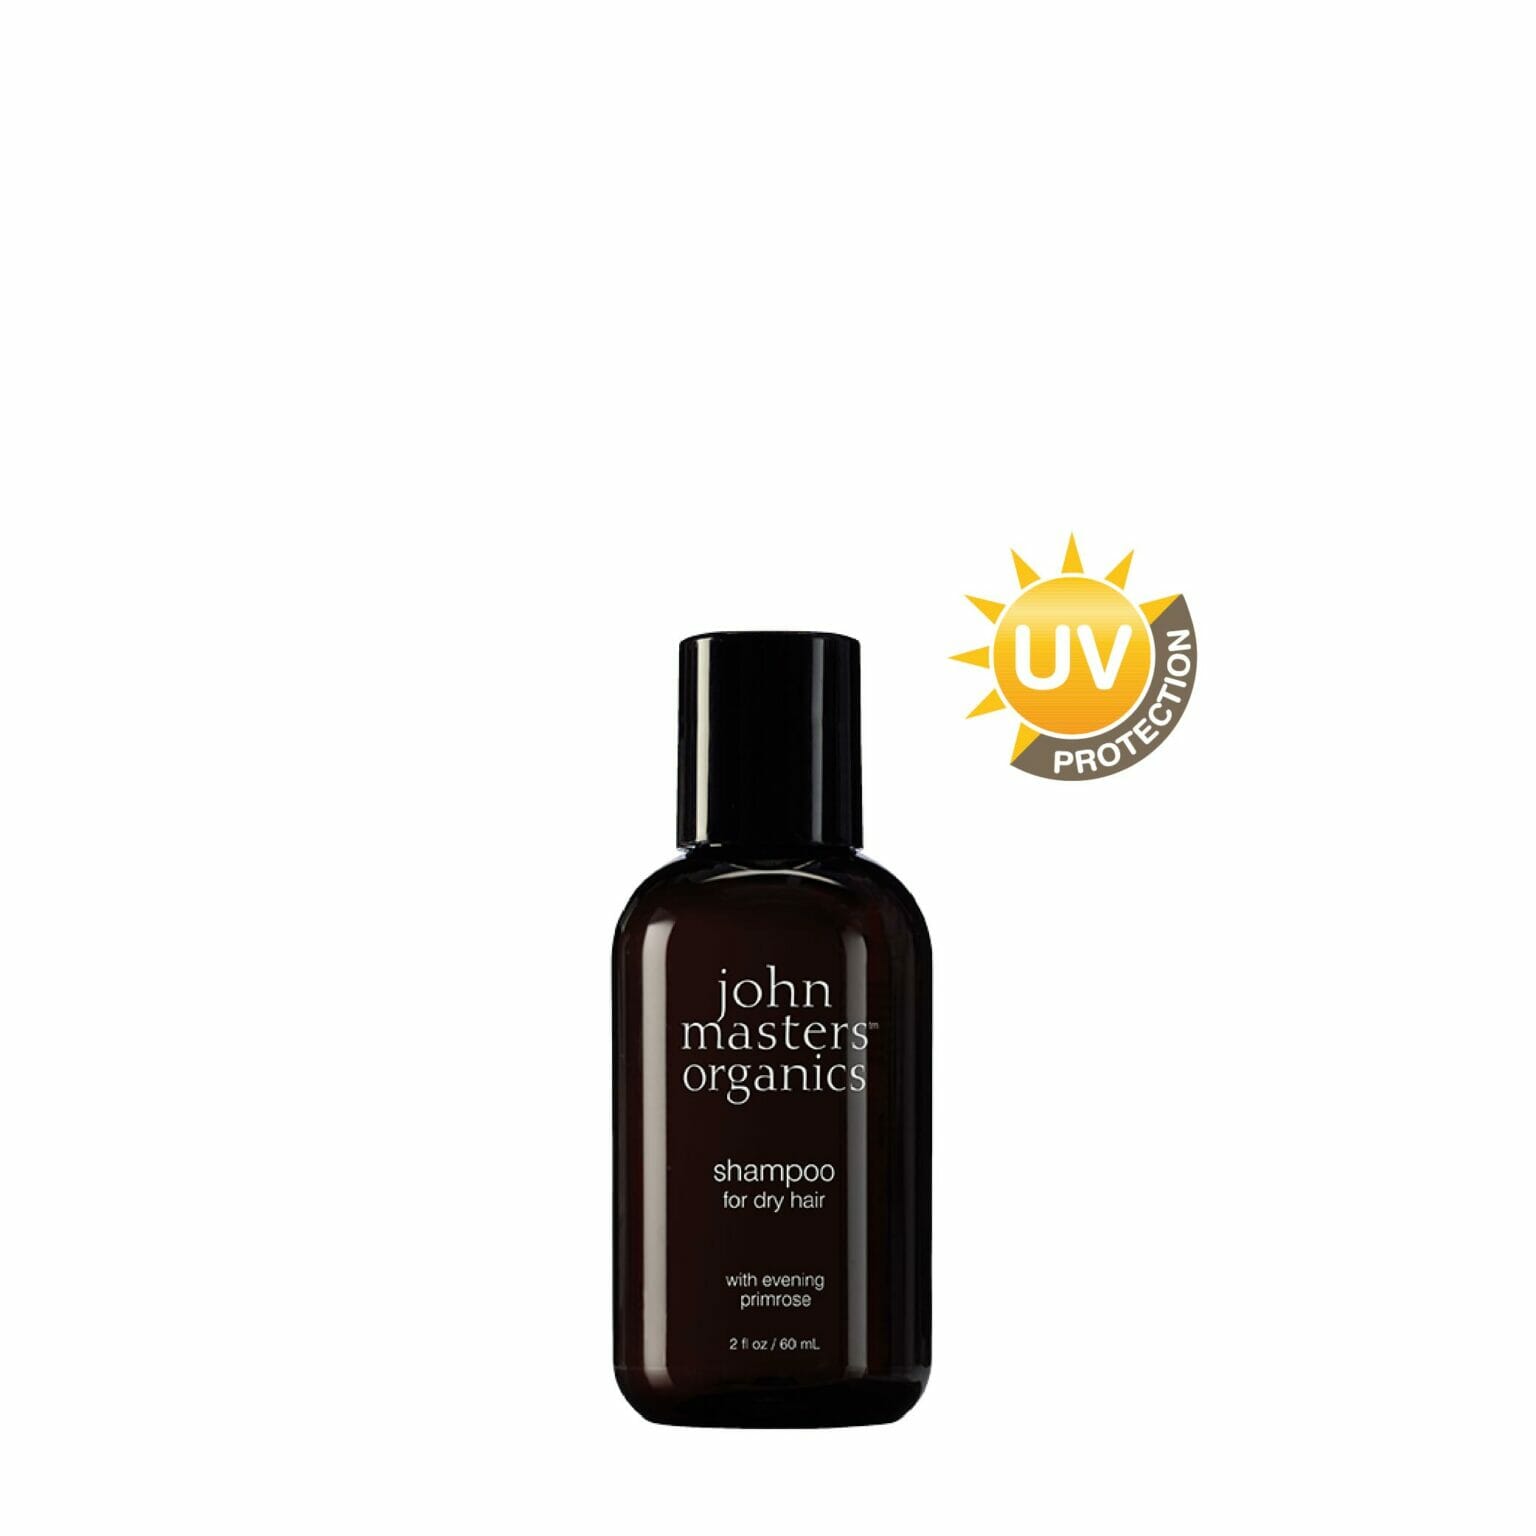 Shampoo for Dry Hair all'Enagra 60ml con UV